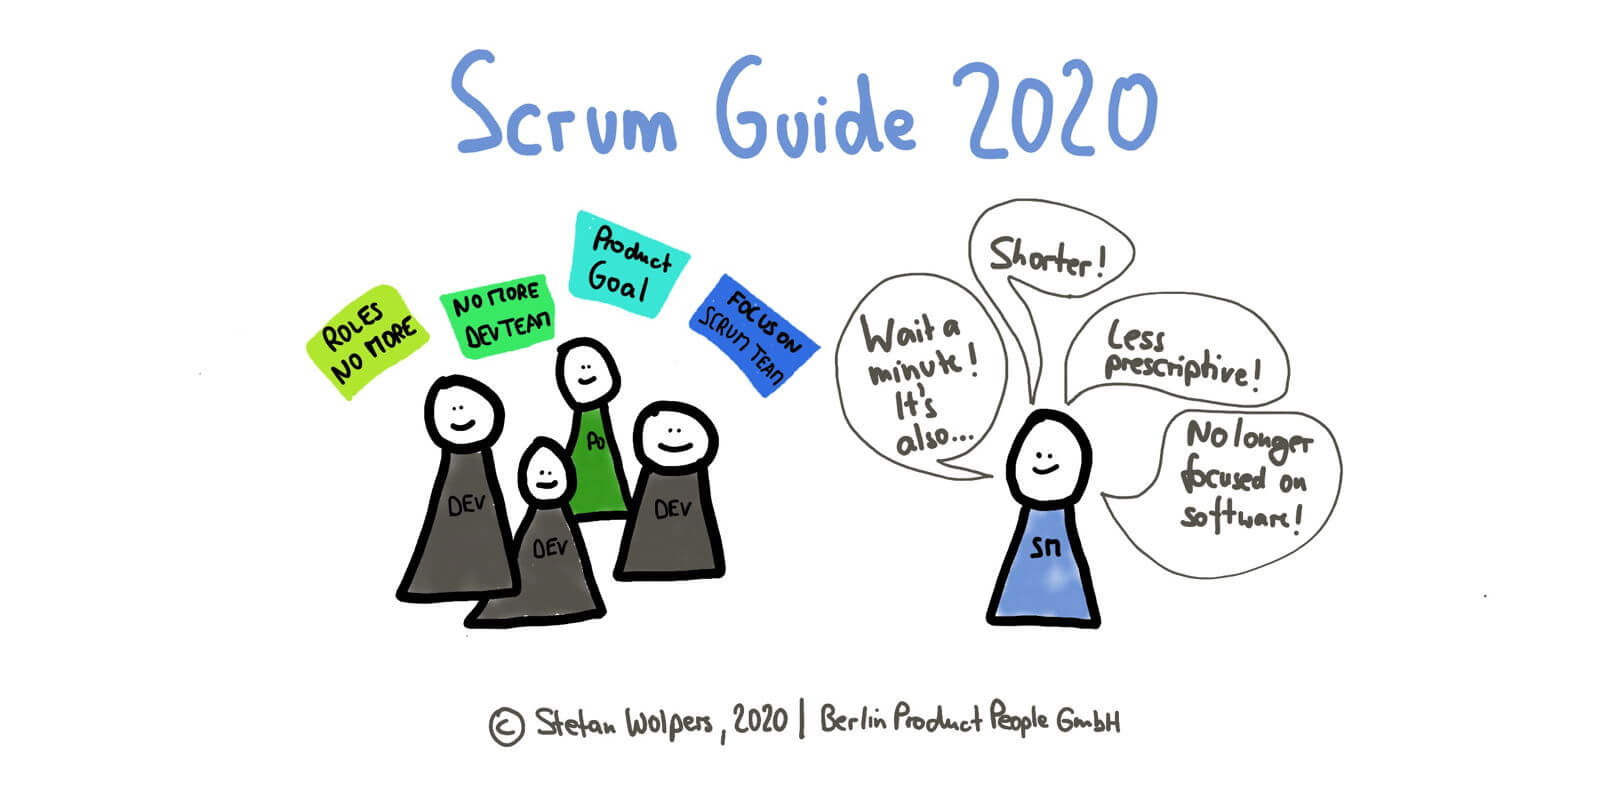 SCRUM GUIDE 2020